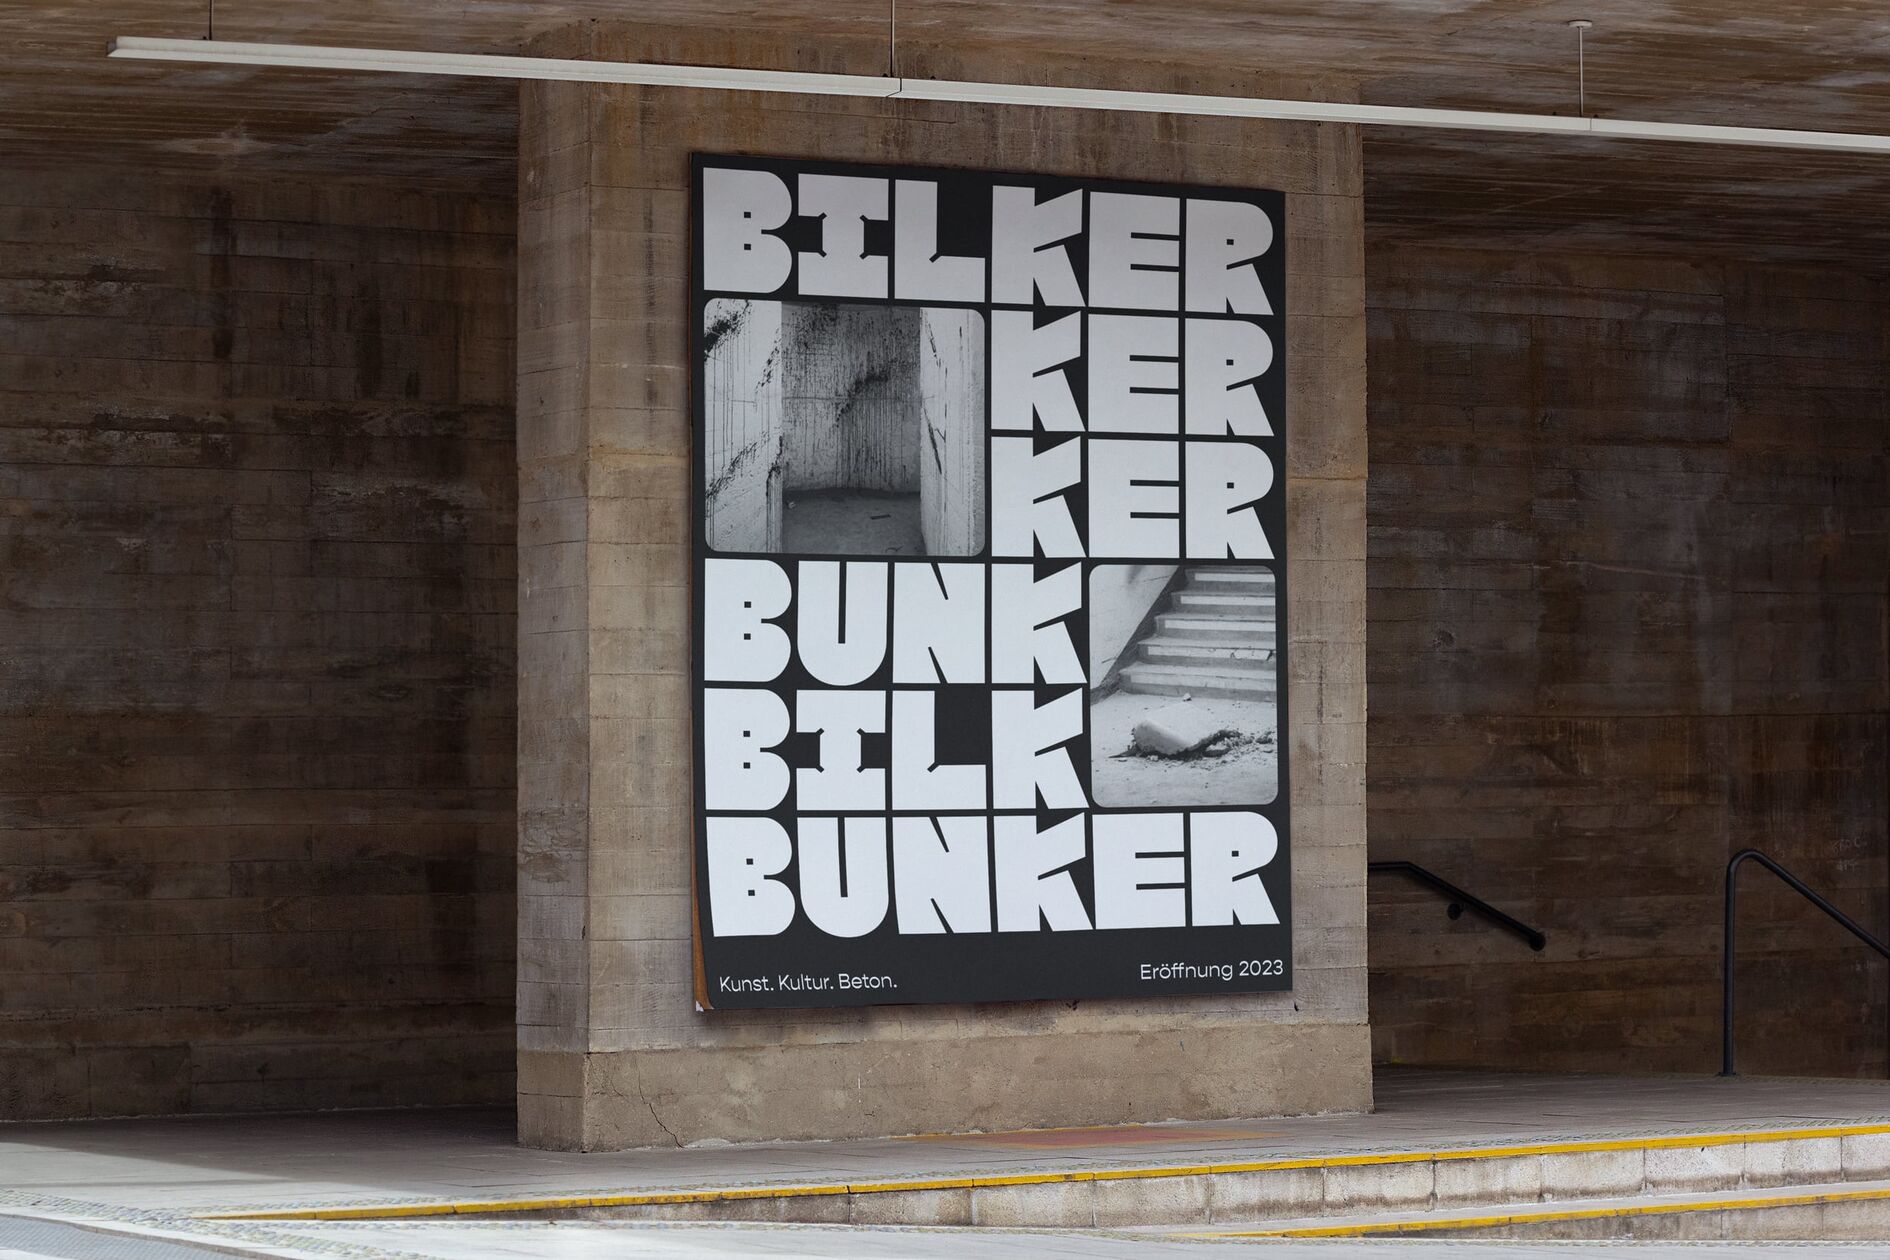 Bilker Bunker Billboard